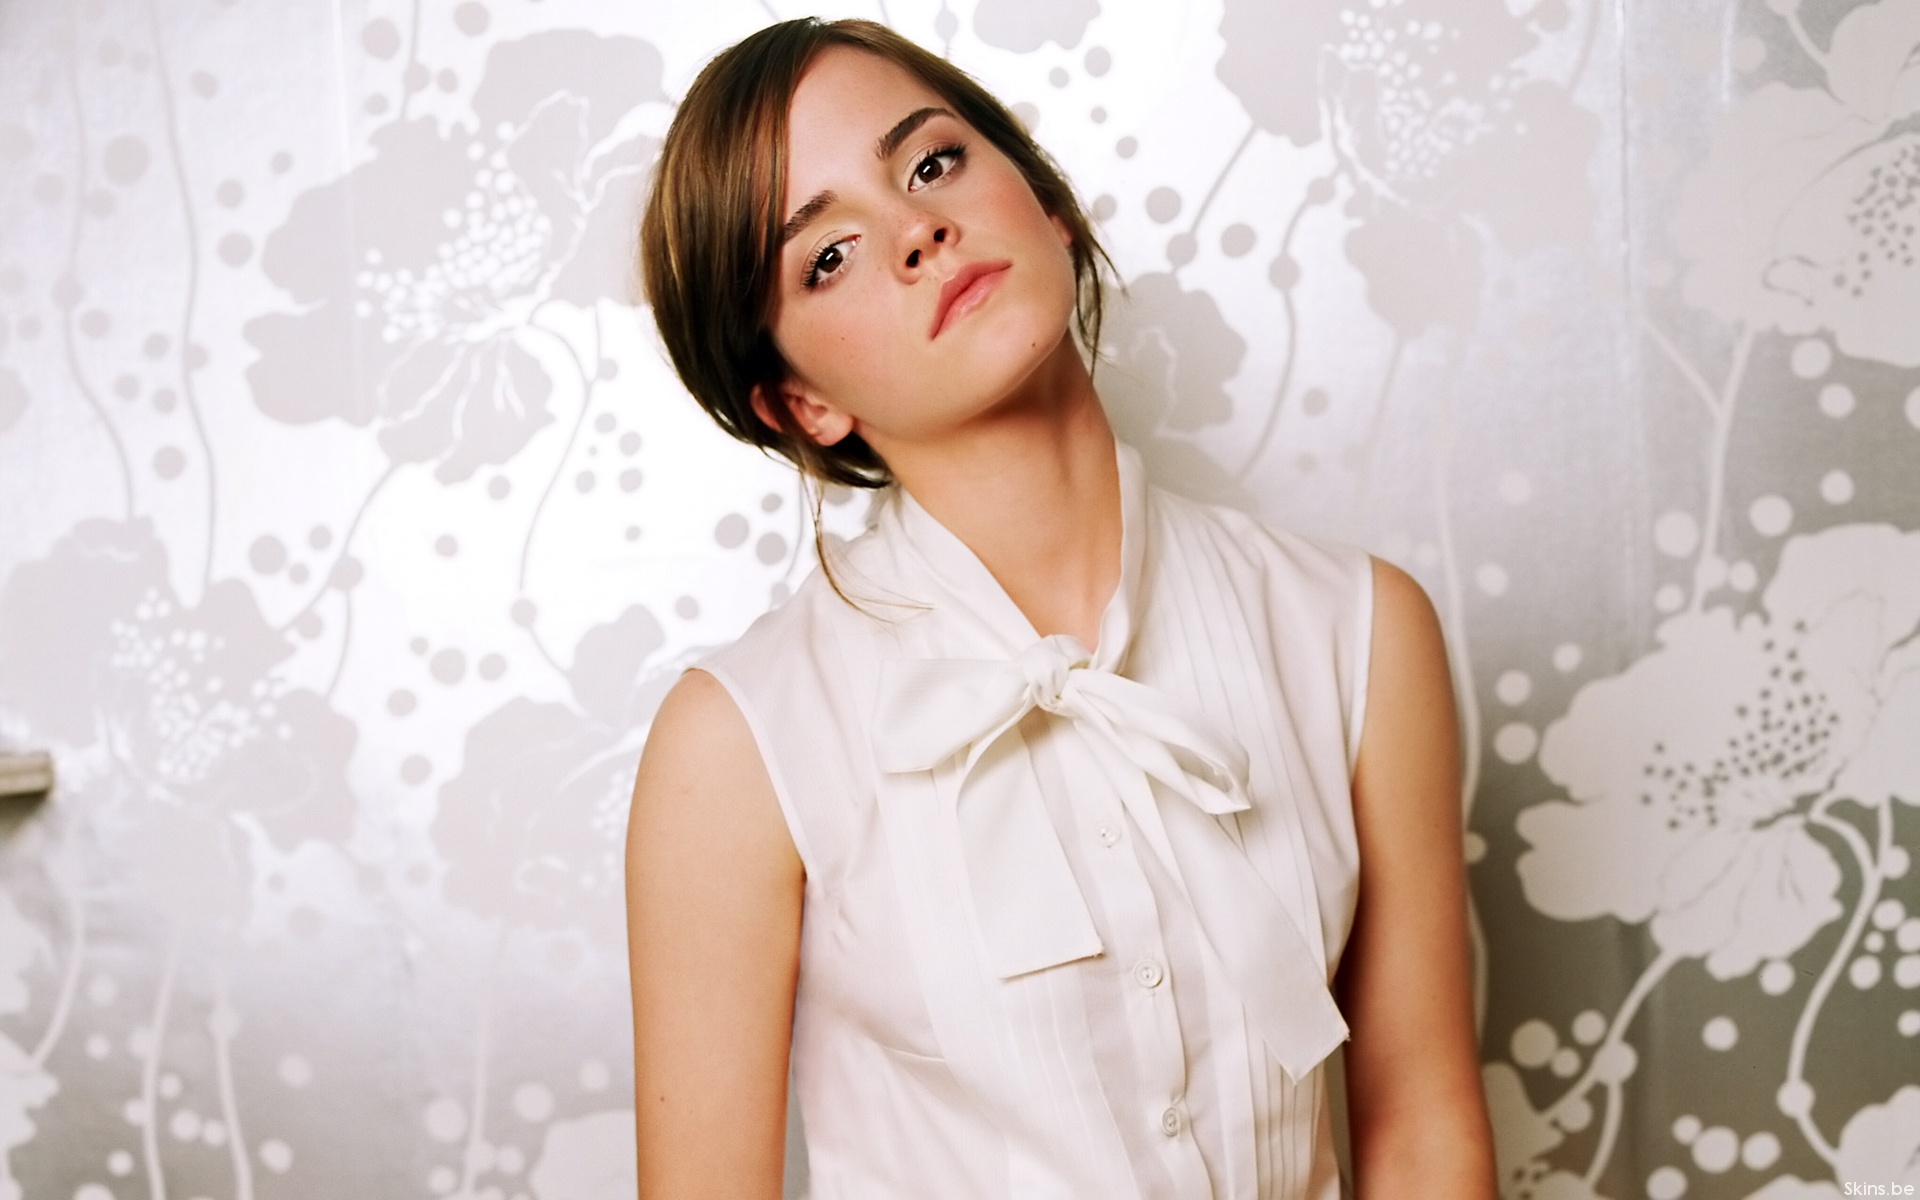 Emma Watson Wide HD Desktop Background Photos In Widescreen